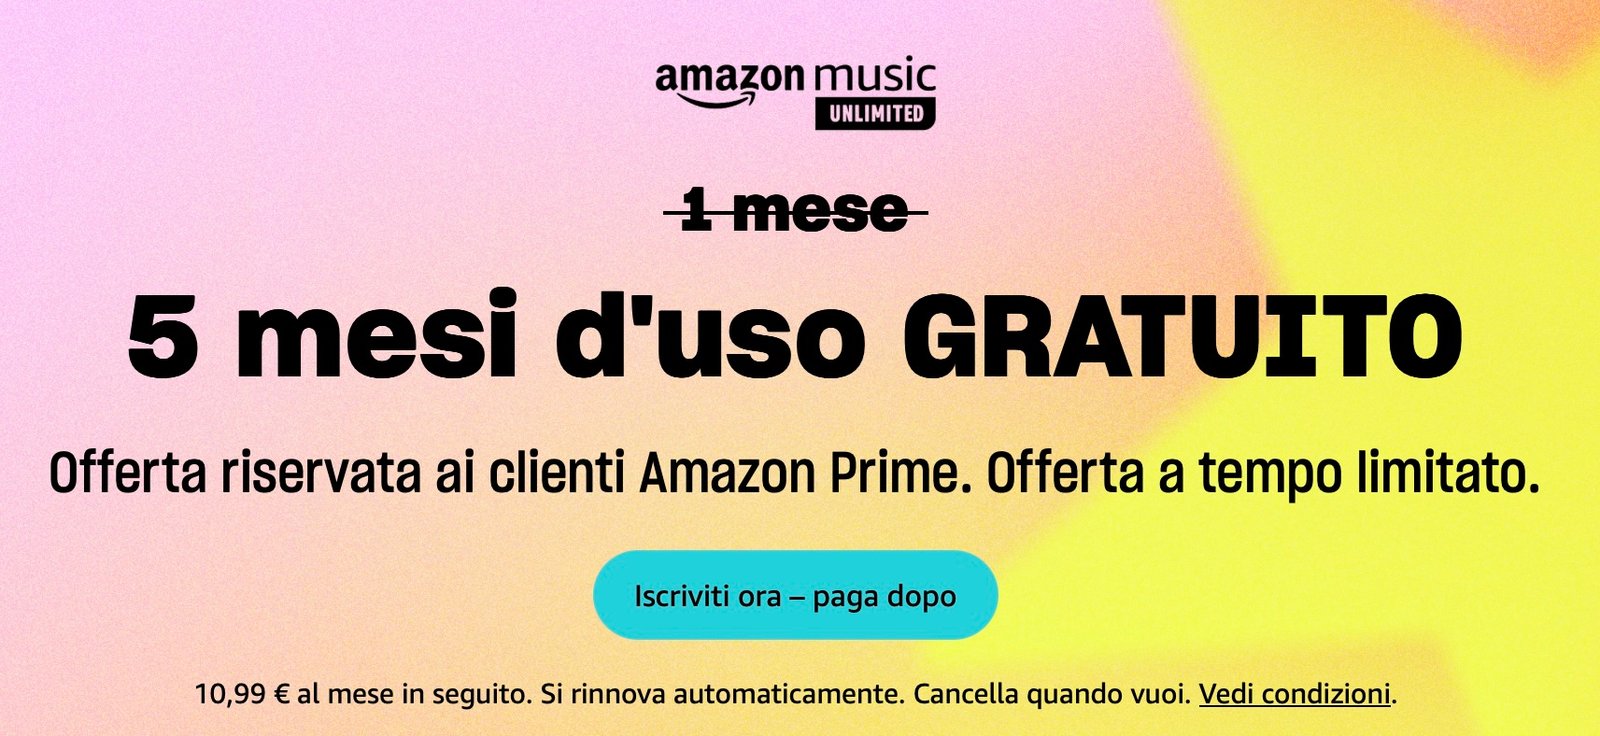 Amazon Music Unlimited è gratis per 5 mesi, offerta riservata ai clienti Amazon Prime